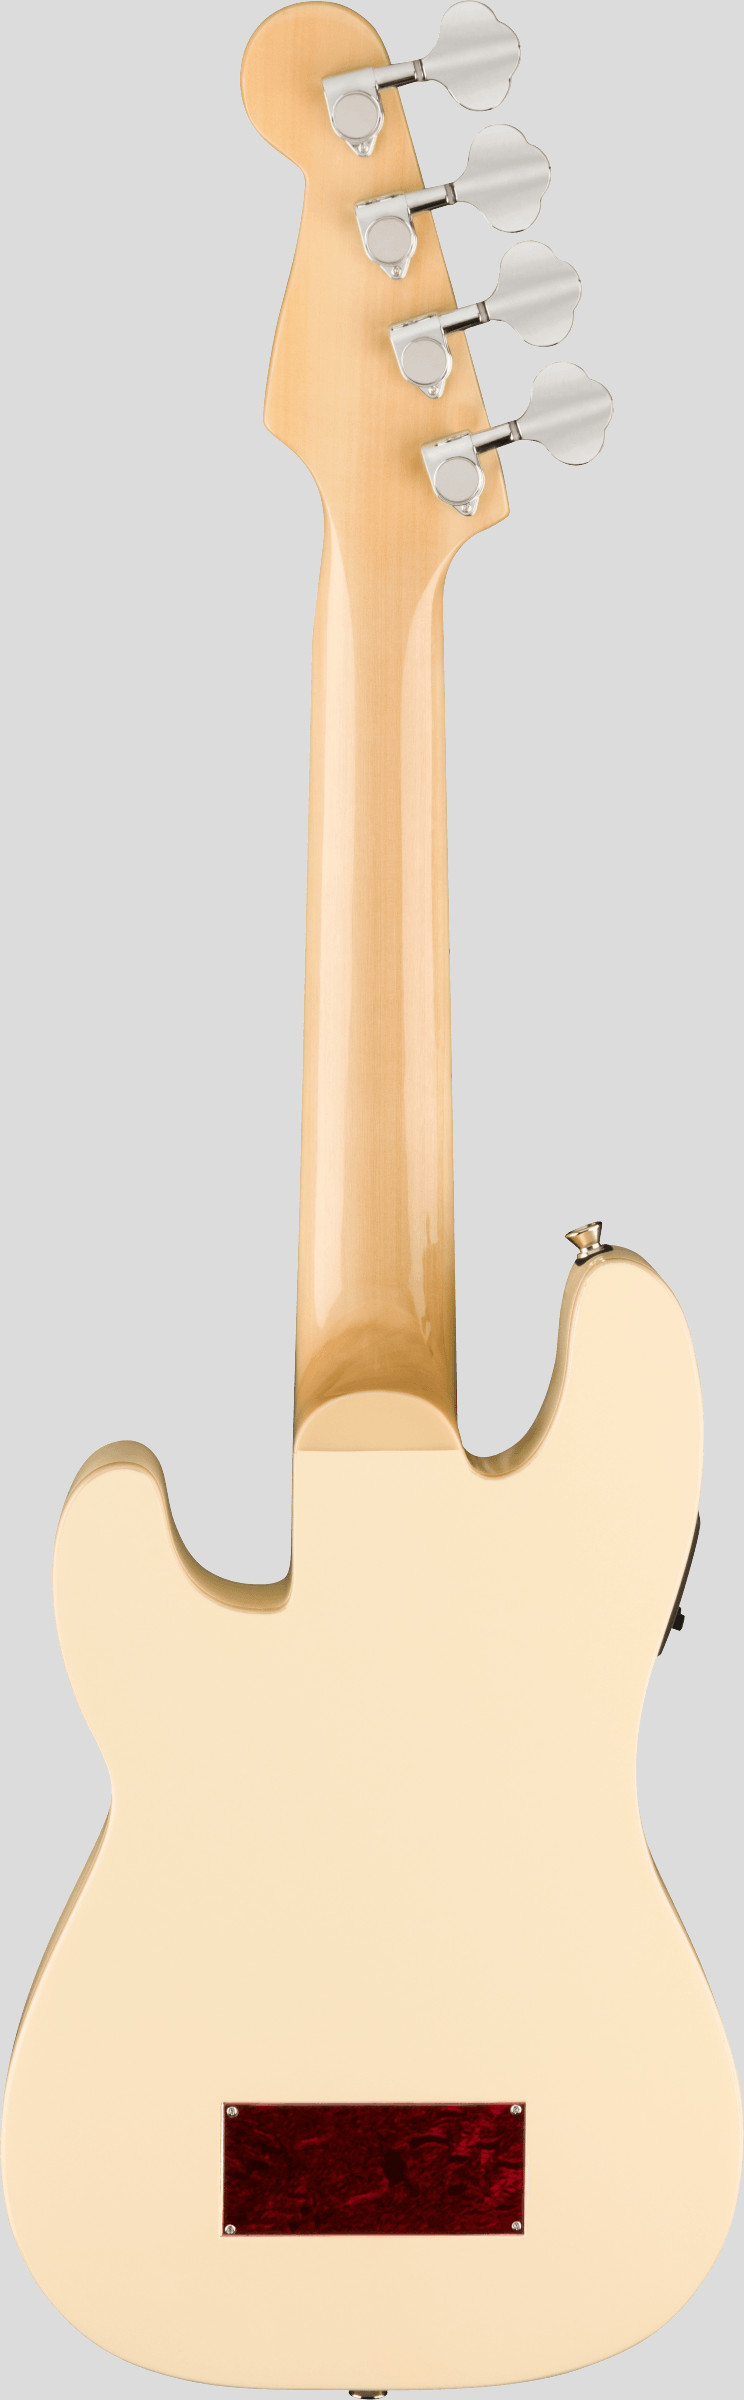 Fender Fullerton Precision Bass Ukulele Olympic White 2